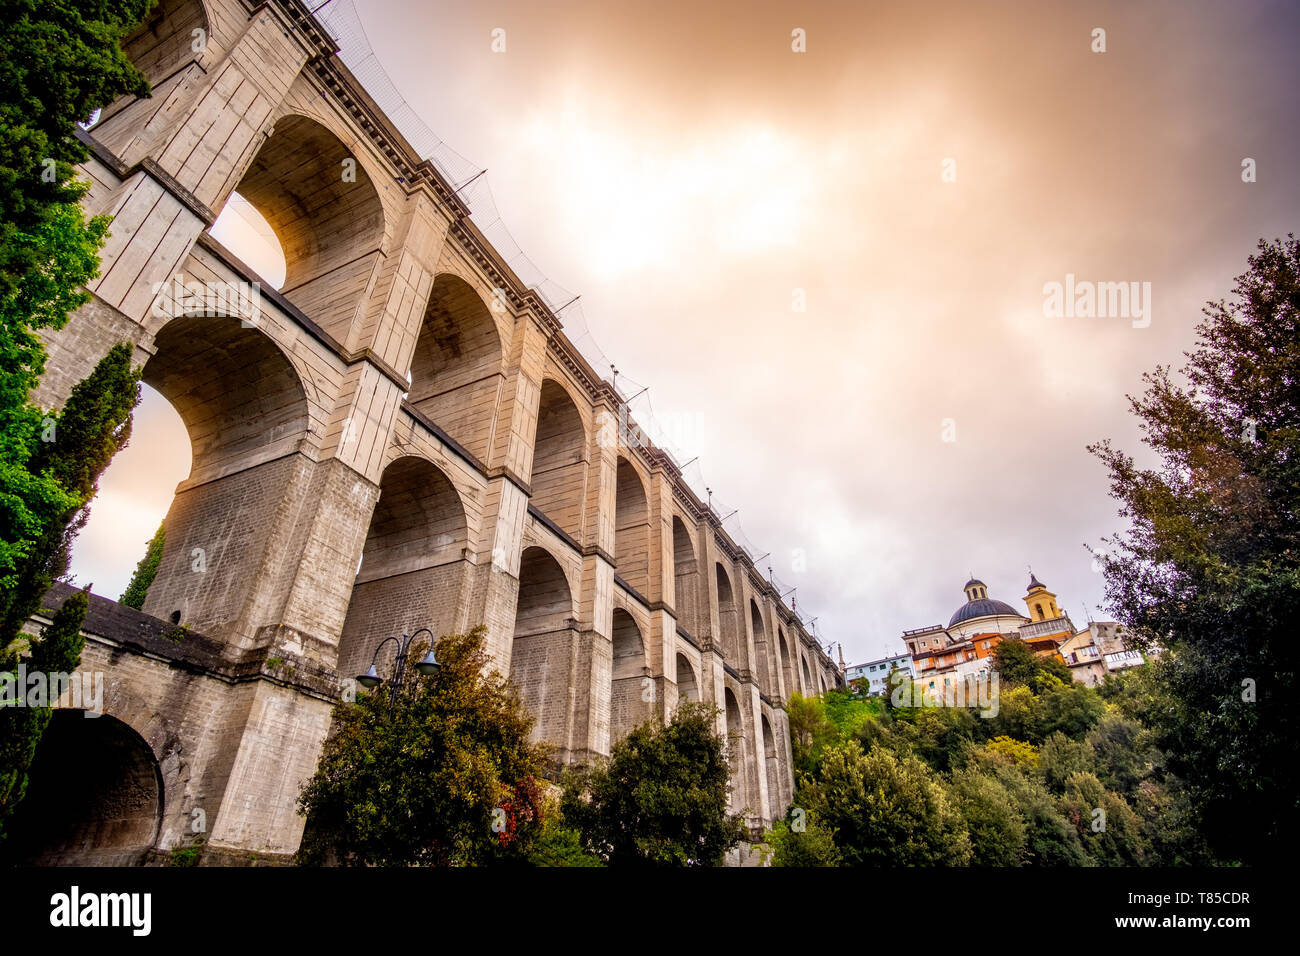 monumental bridge of Ariccia - Rome province in Lazio - Italy Stock Photo